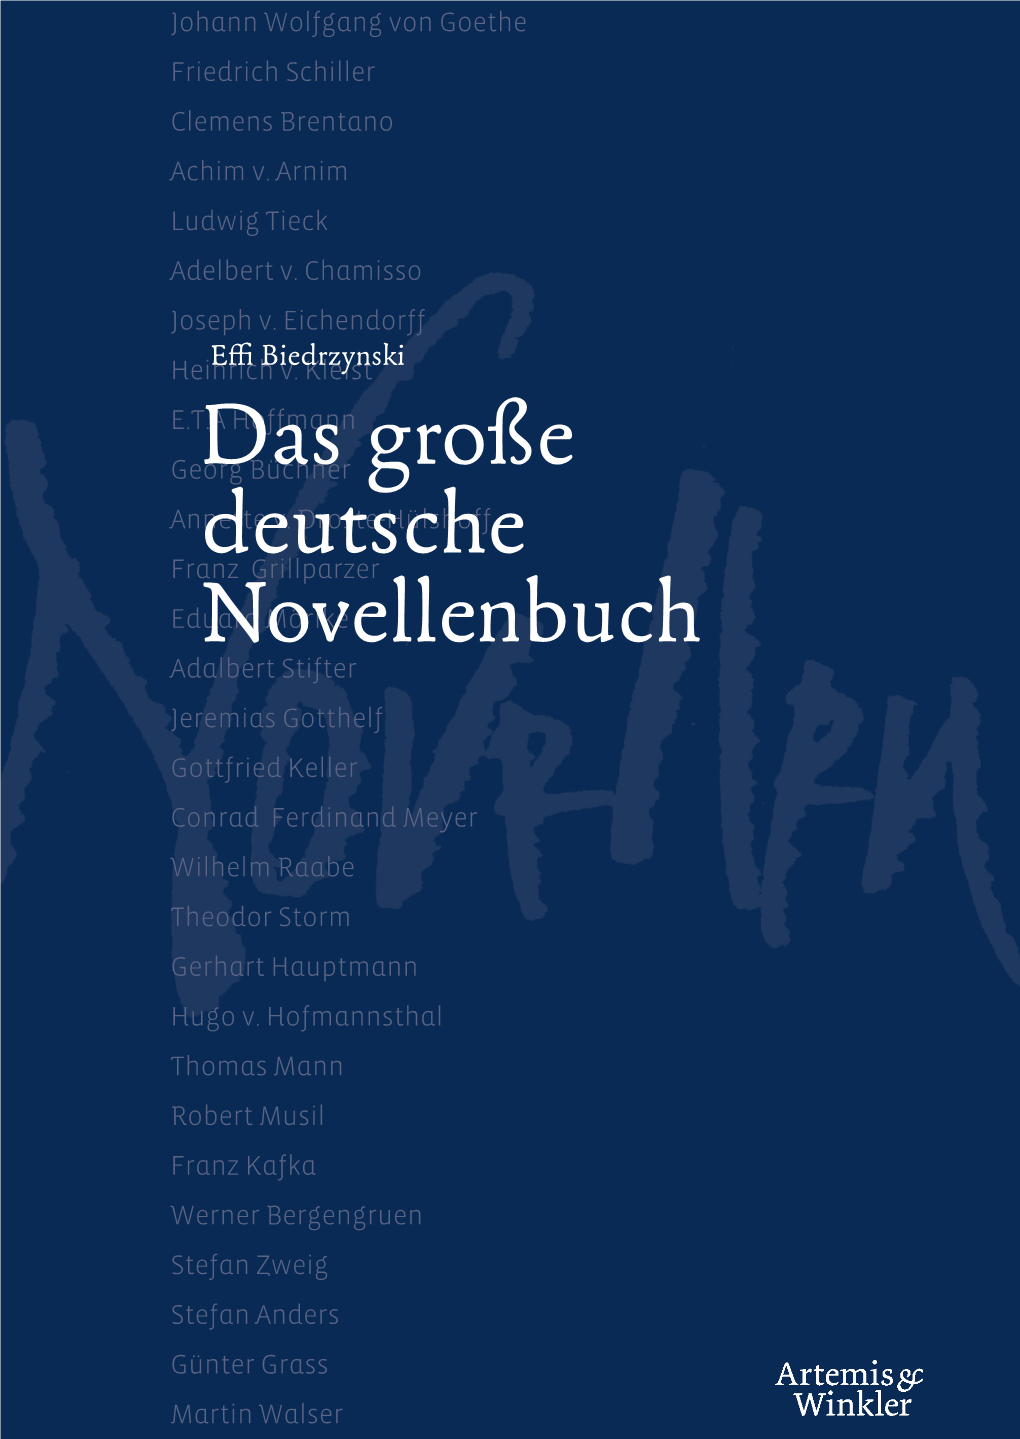 Das Große Deutsche Novellenbuch“ Traf Georgdas Büchner Große Schichten Von Günter Grass Und Martin Walser, Die Zu Den Wichtigsten Autoren Annette V